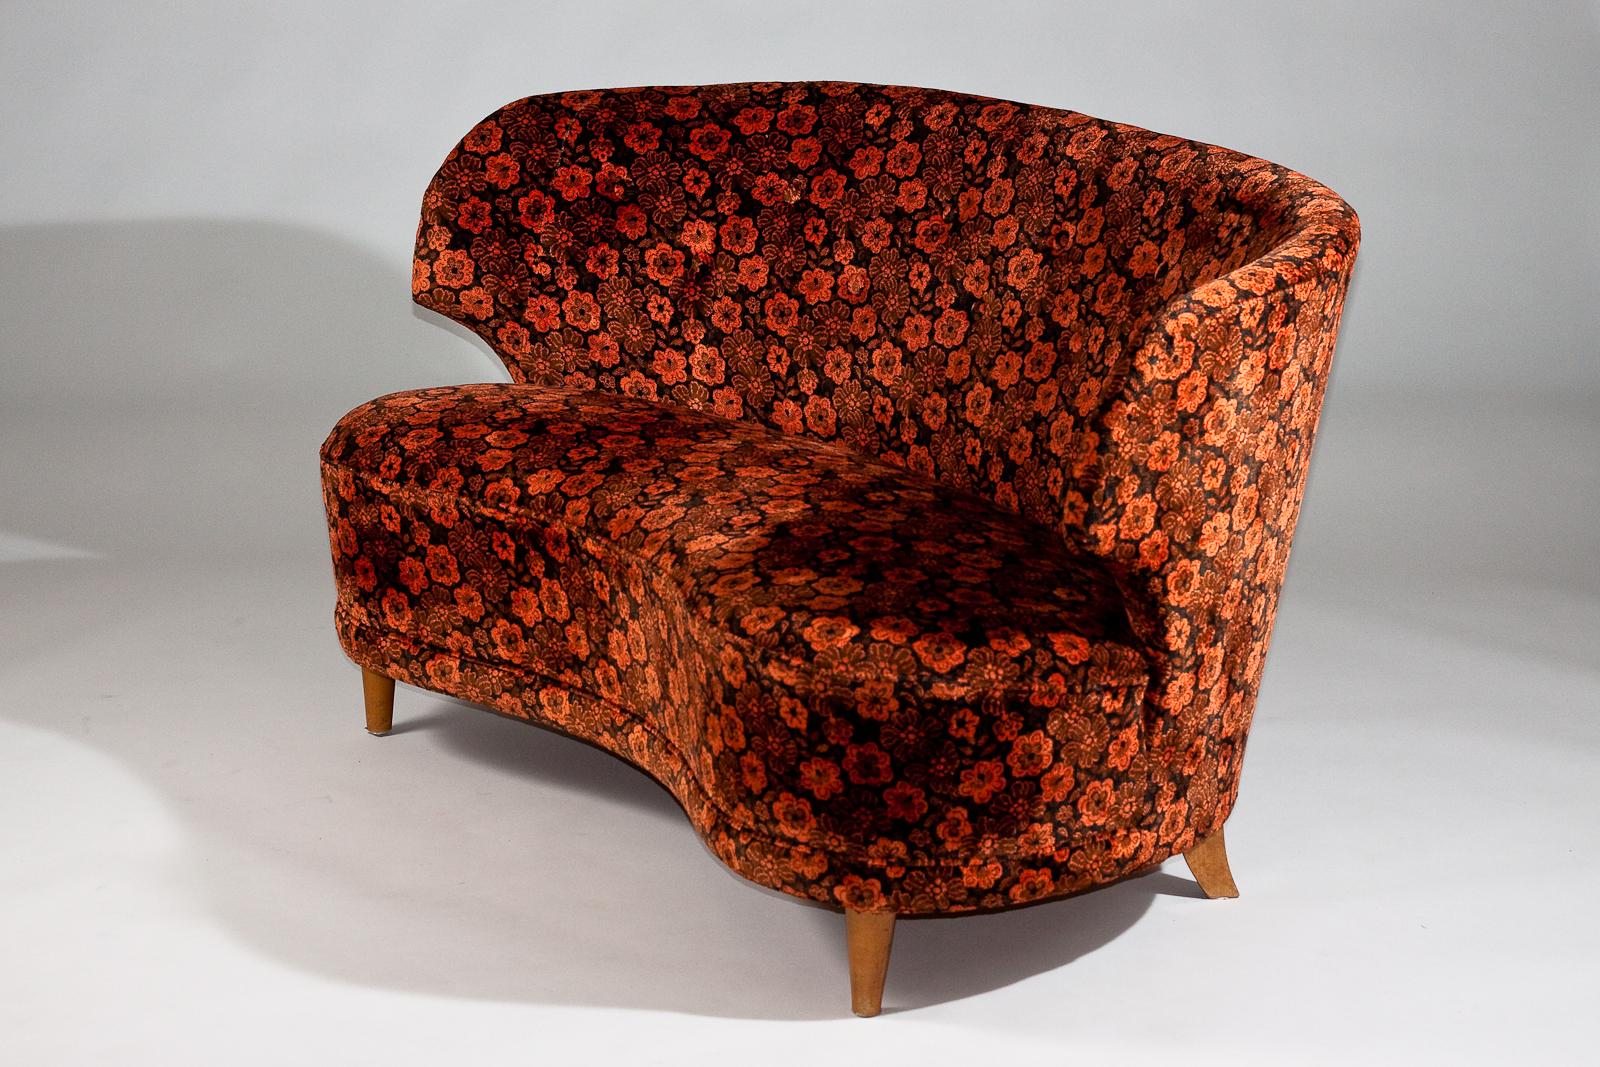 Das geschwungene Carl-Johan Boman-Sofa aus den 1940er Jahren ist ein Klassiker des modernen skandinavischen Designs des renommierten Unternehmens Boman Oy. Dieses Vintage-Sofa zeichnet sich durch die Qualität der Boman Oy-Möbel aus, mit seinen